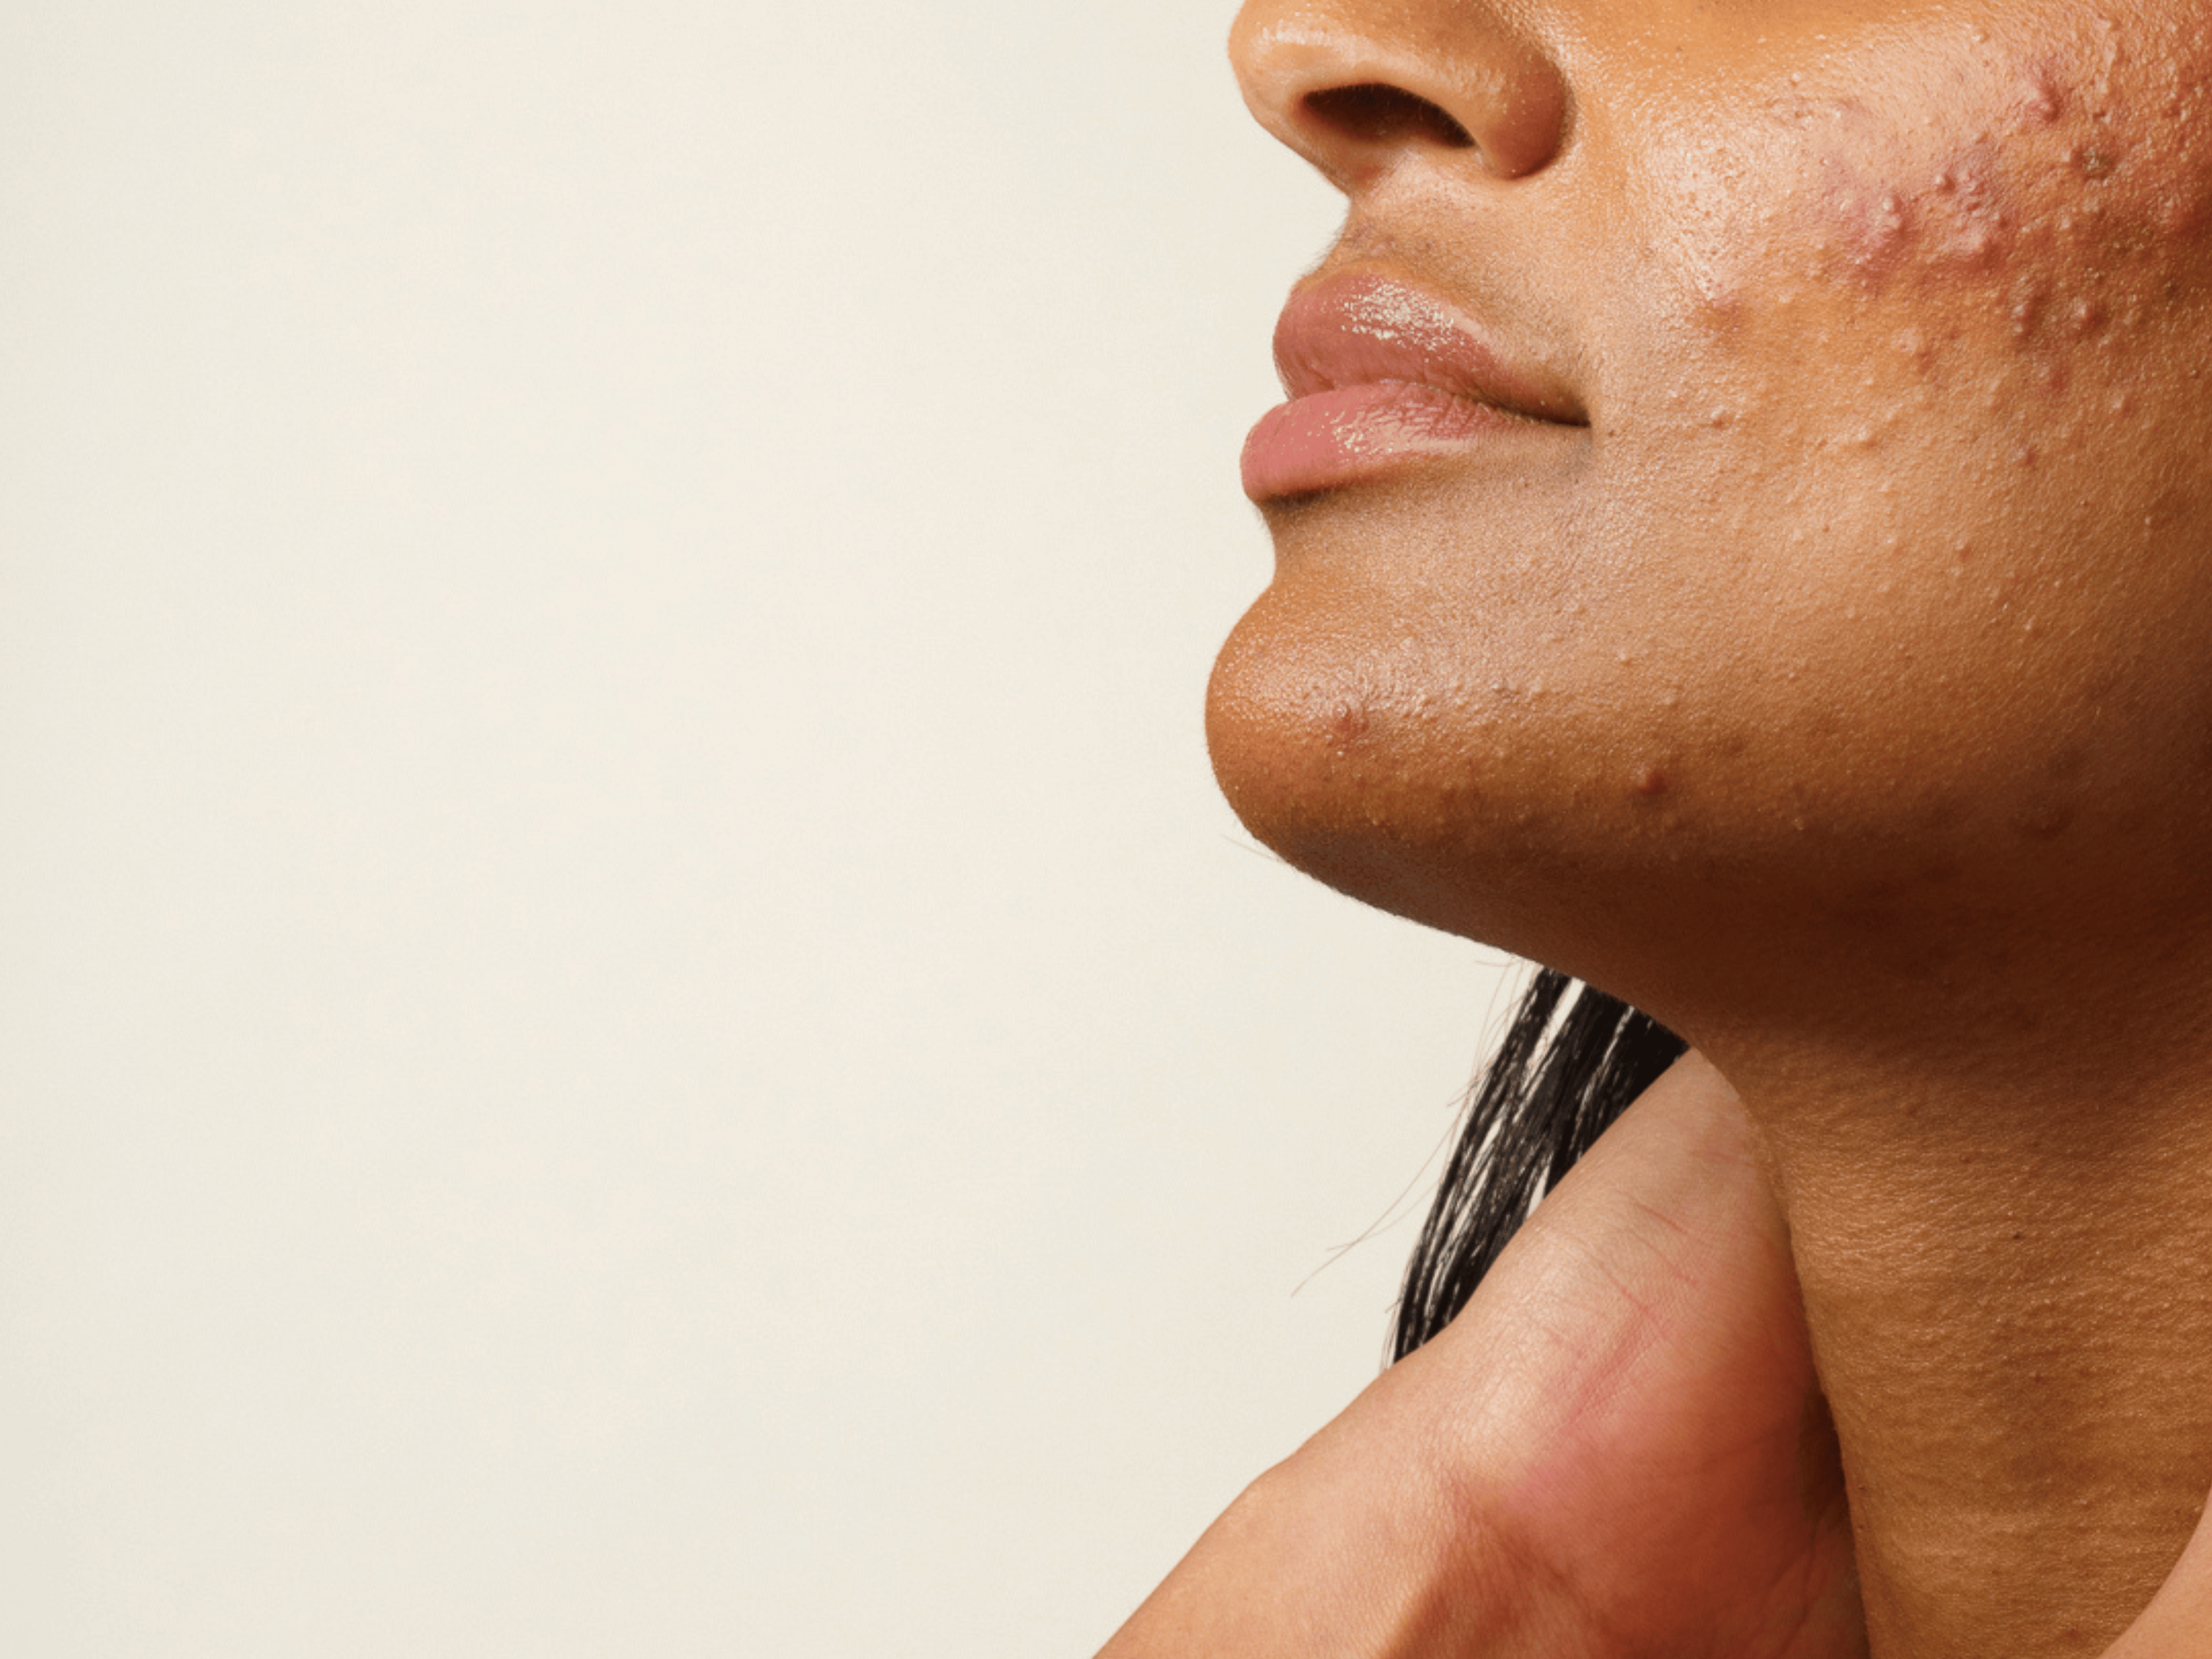 Interview avec Cécile Verdier, naturopathe. Cet article a pour but de t'aider à mieux comprendre les facteurs déclencheurs de l'acné inflammatoire. On te partage également nos conseils afin de l'atténuer.